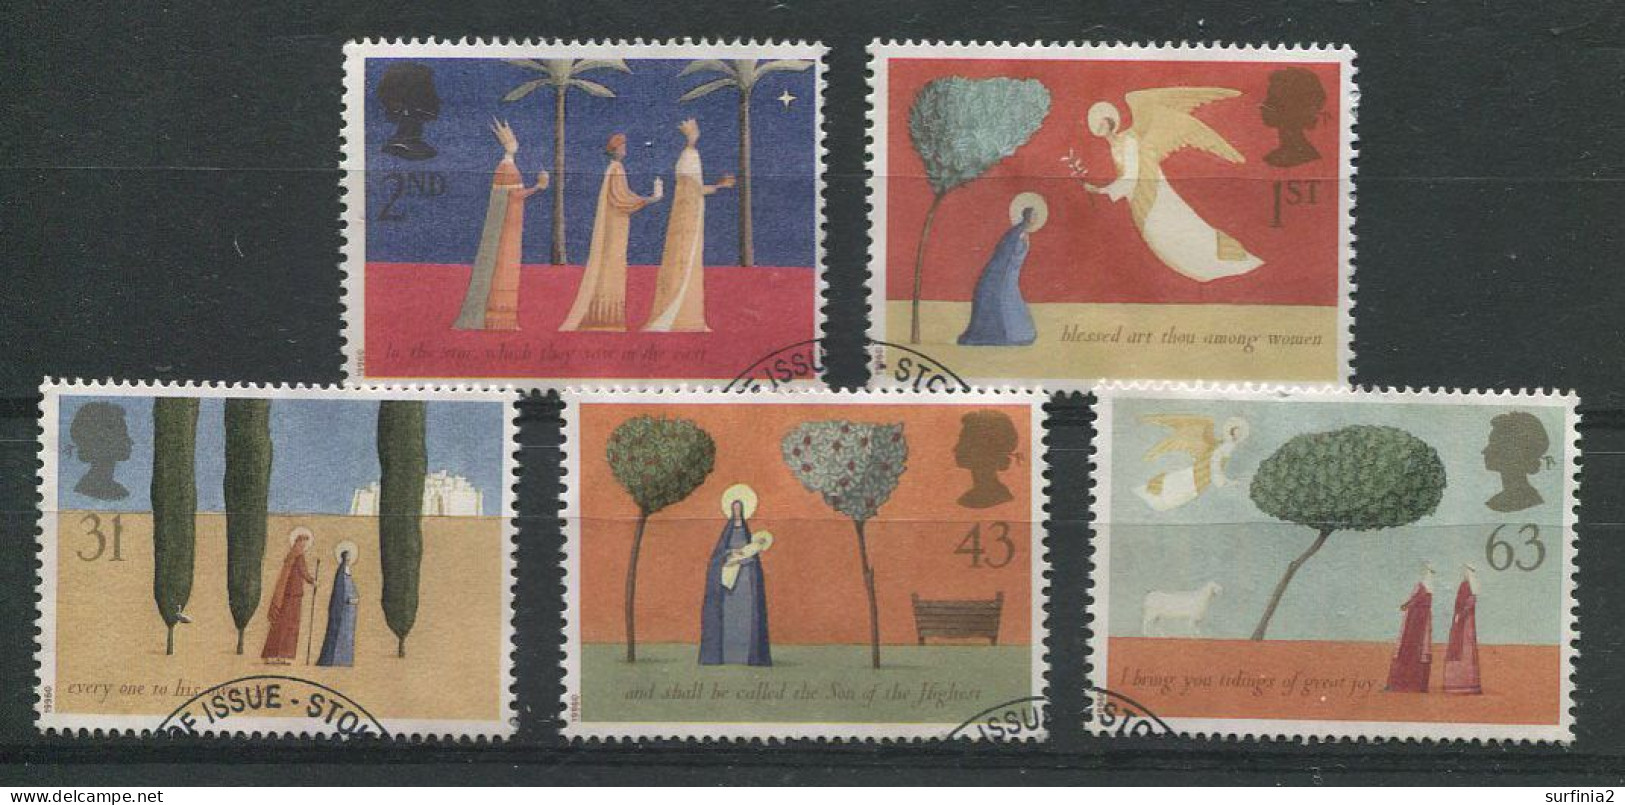 STAMPS - 1996 CHRISTMAS SET VFU - Used Stamps